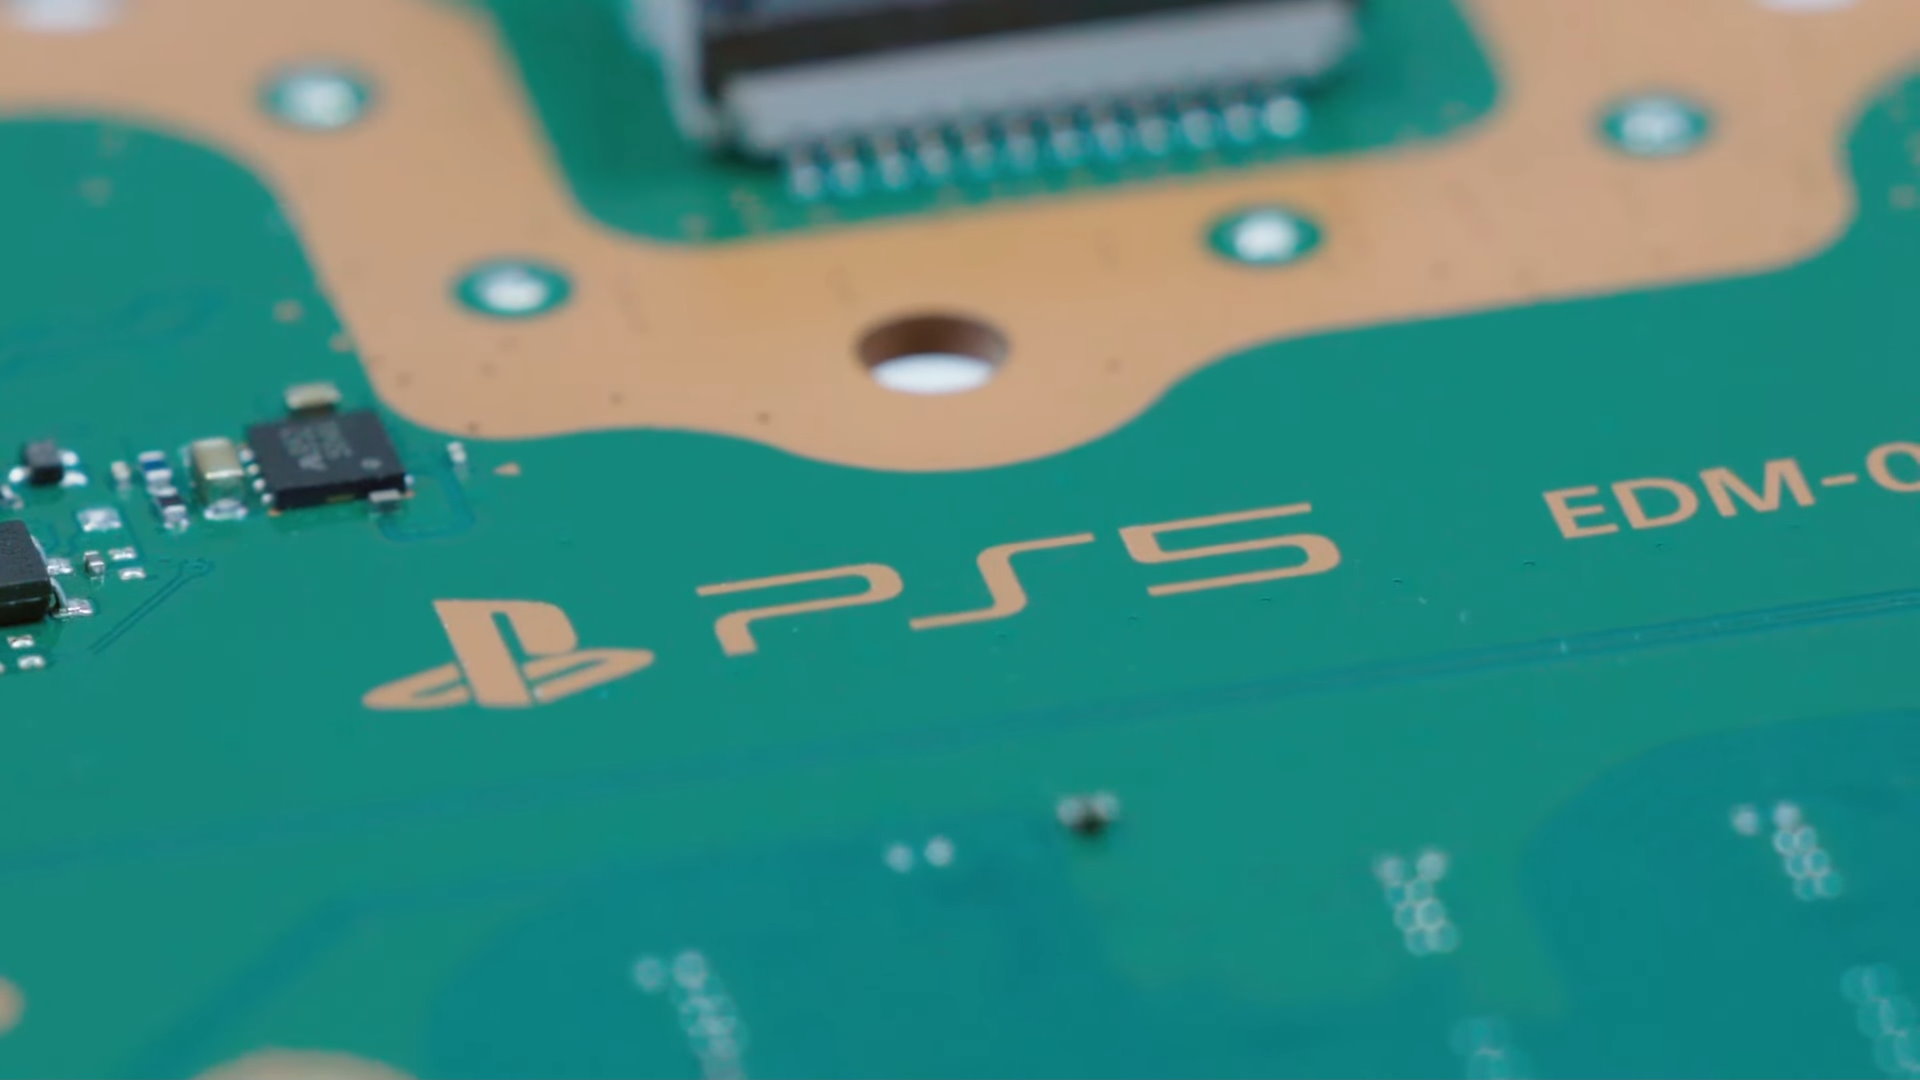 La PS5 a été piratée : voici ce qu’il faut savoir sur le problème de sécurité de la console